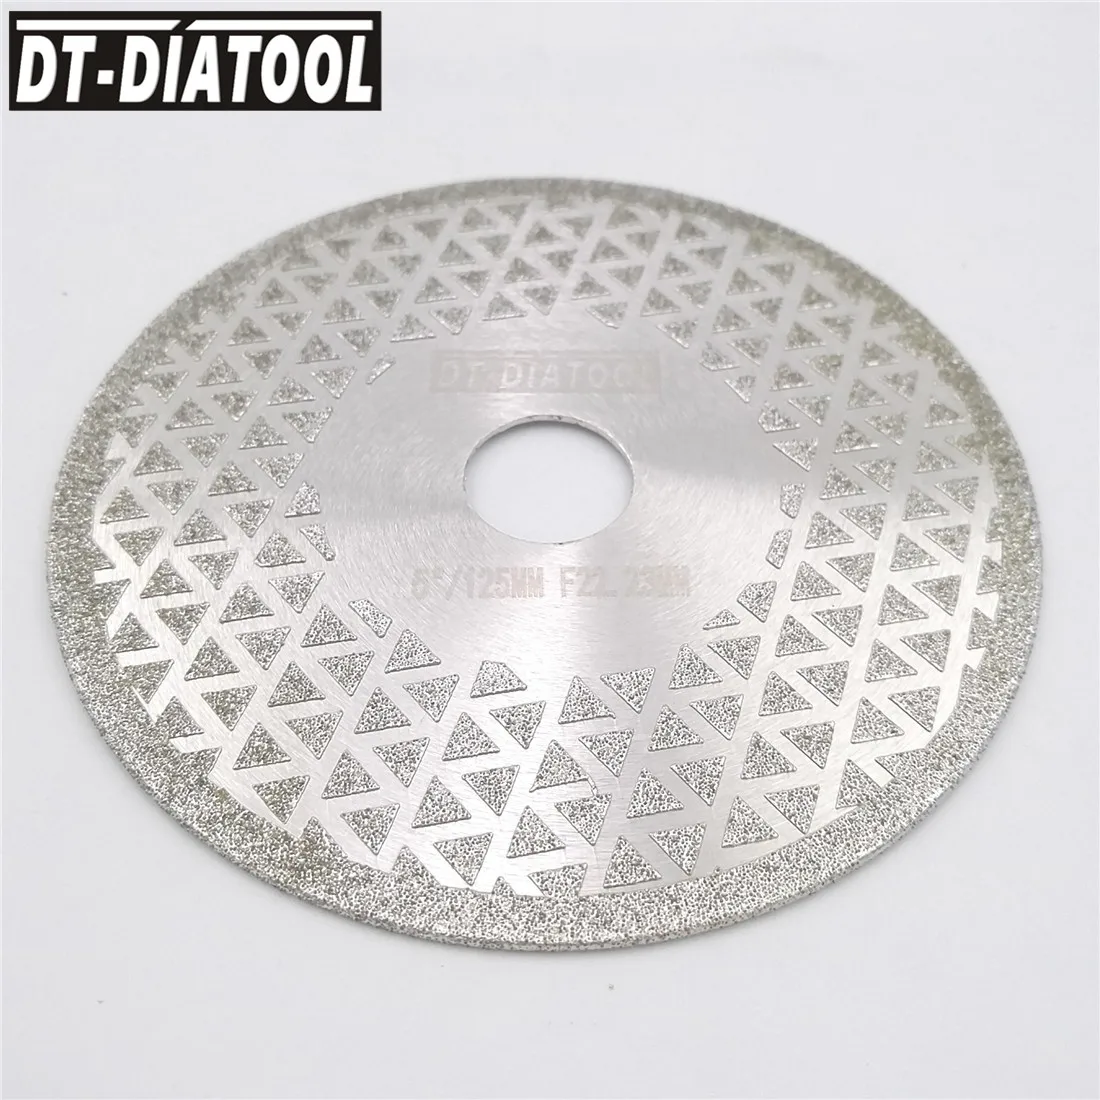 DT-DIATOOL 2 шт. диаметром 125 мм гальванический алмазный режущий диск 5 дюймов, шлифовальный круг с отверстием 22,23 мм, лезвие с двусторонним покрыт... от AliExpress RU&CIS NEW